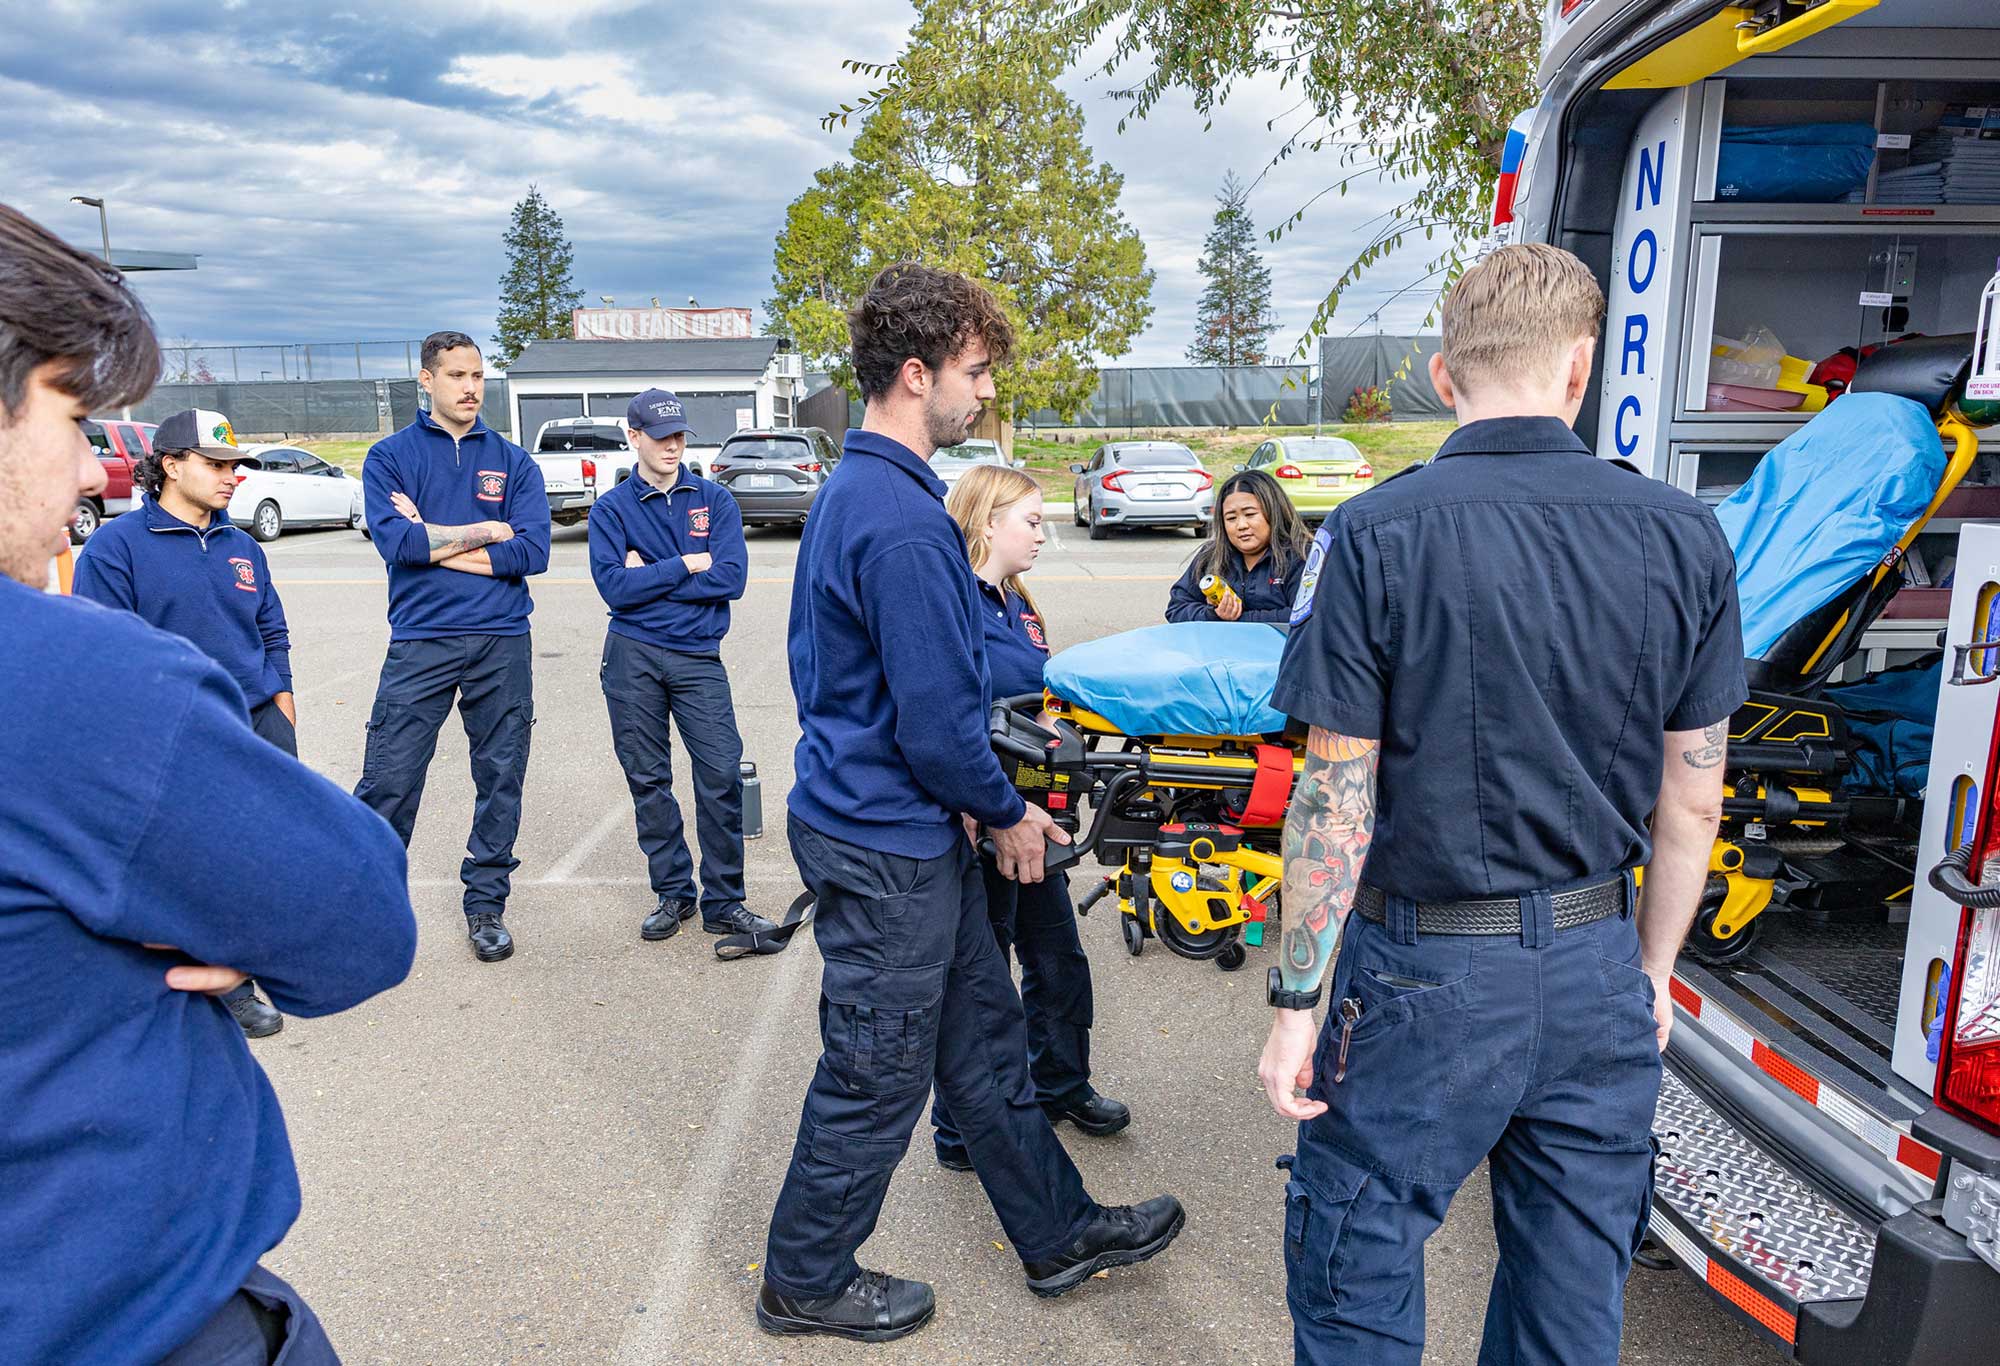 Hands-on EMT training